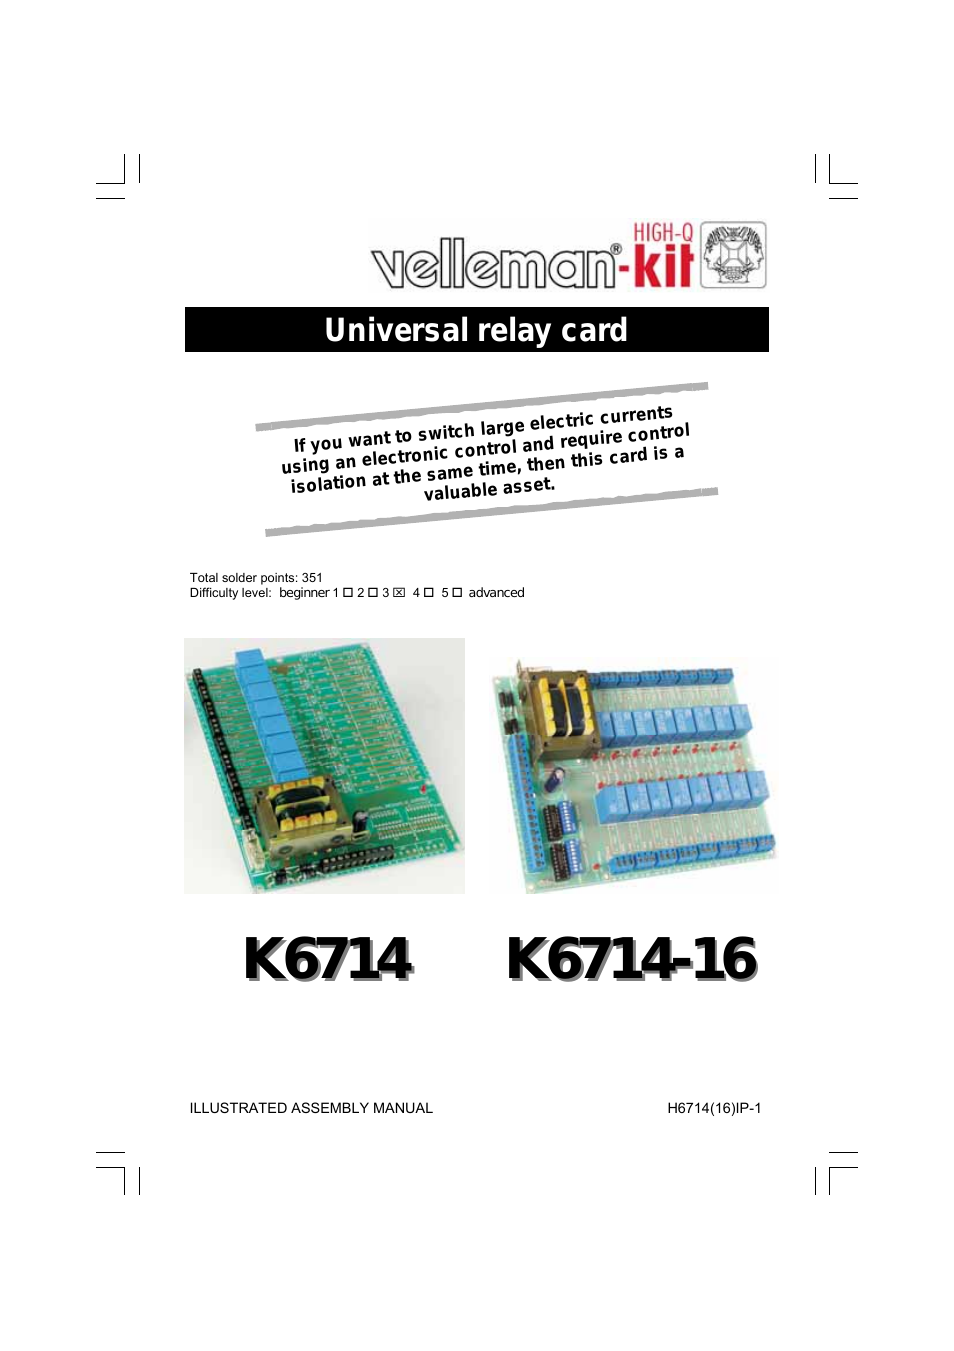 K6714 Assembly instructions